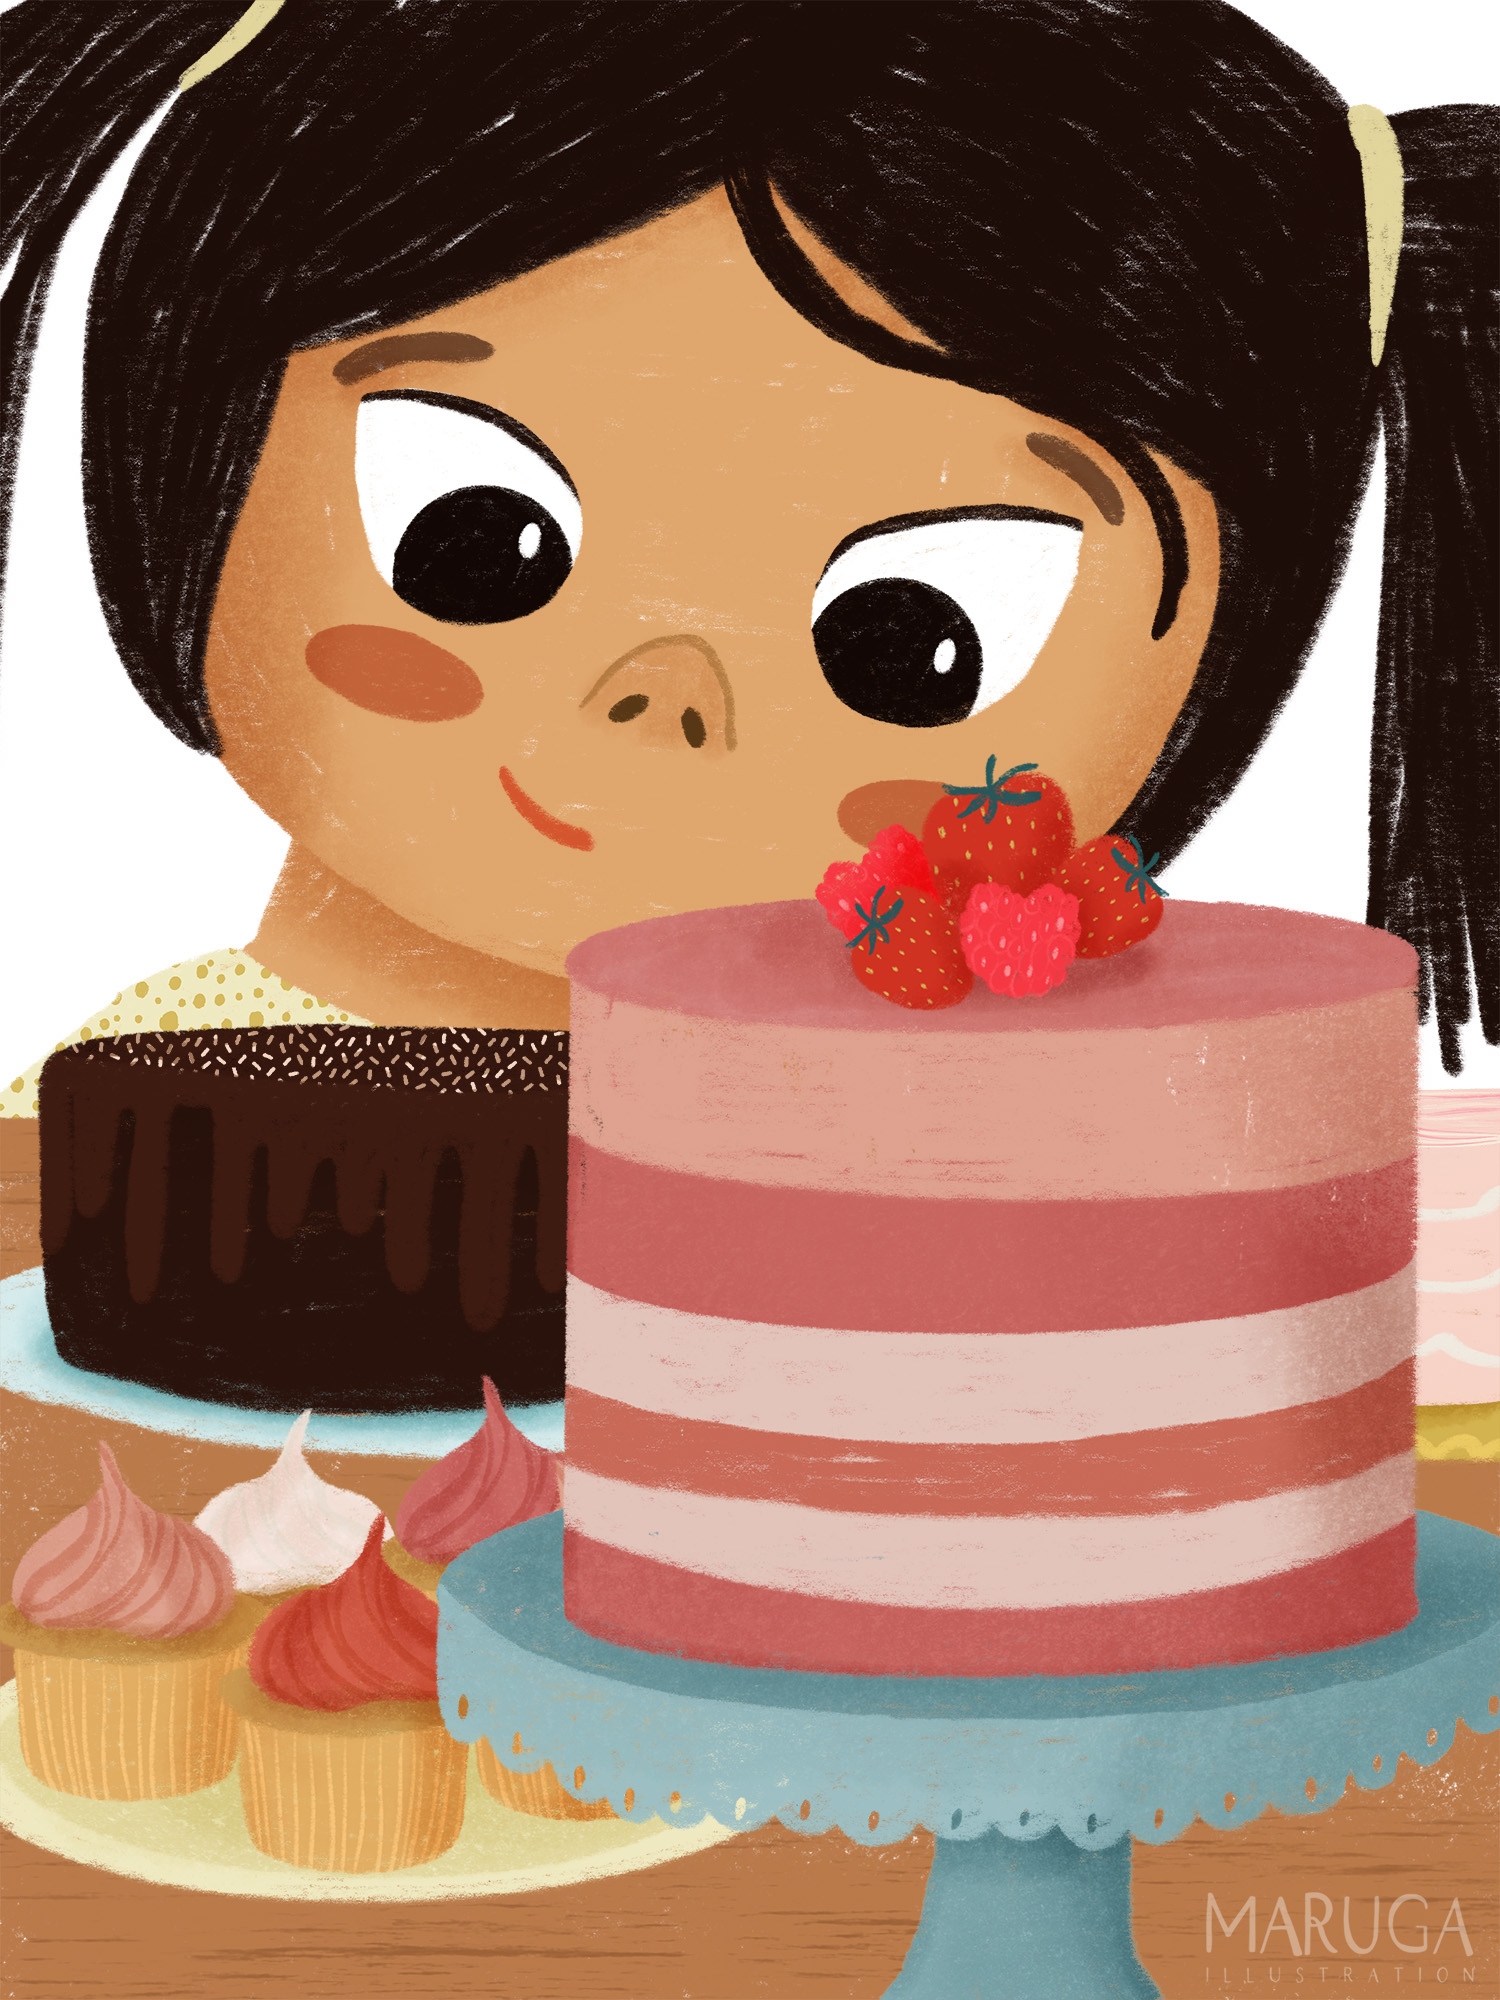 illustratie van een meisje dat kijkt naar verschillende taarten